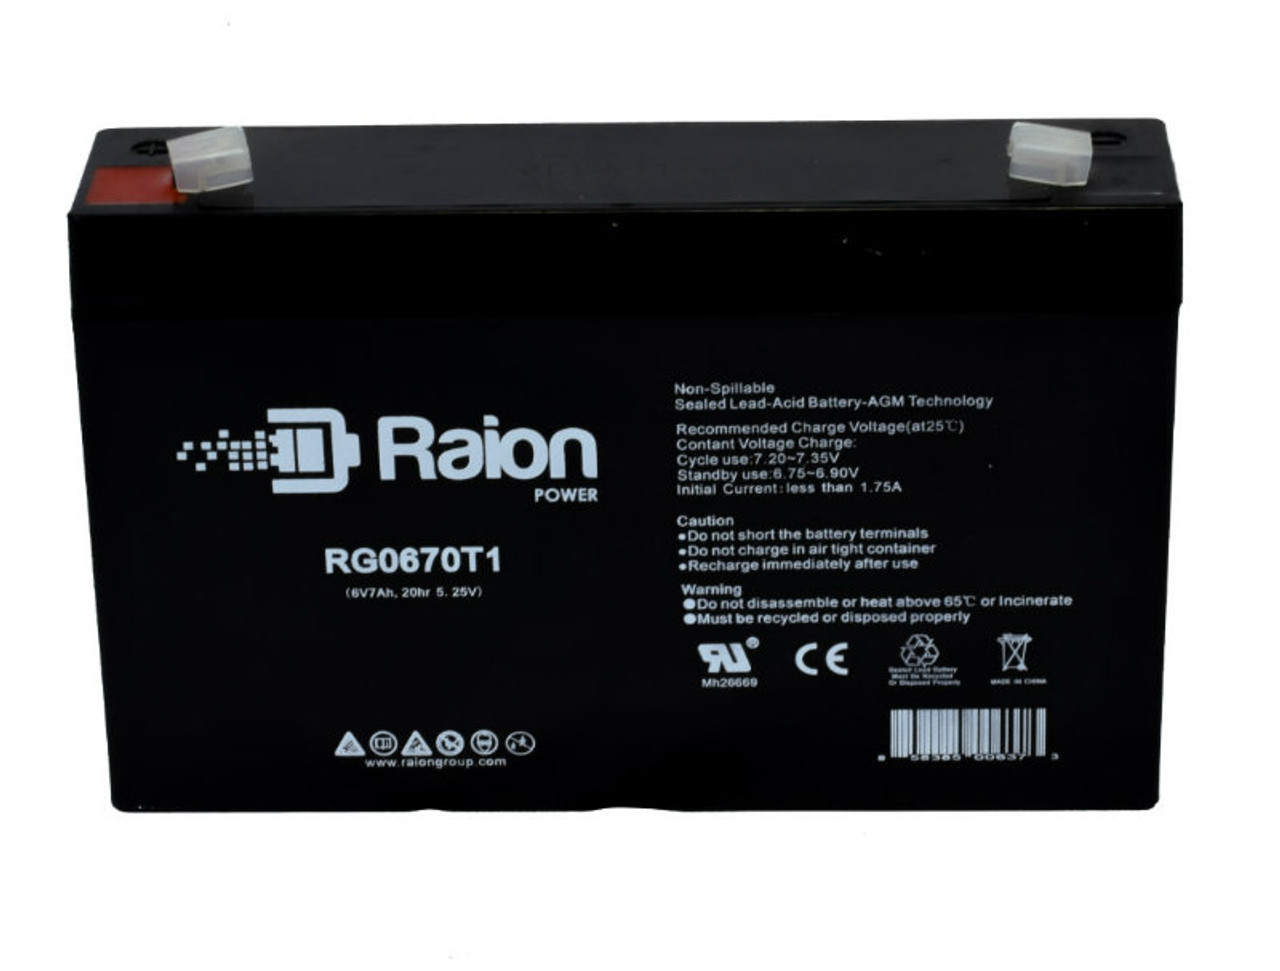 Raion Power RG0670T1 SLA Battery for Sonnenschein 100001164 OEM Battery